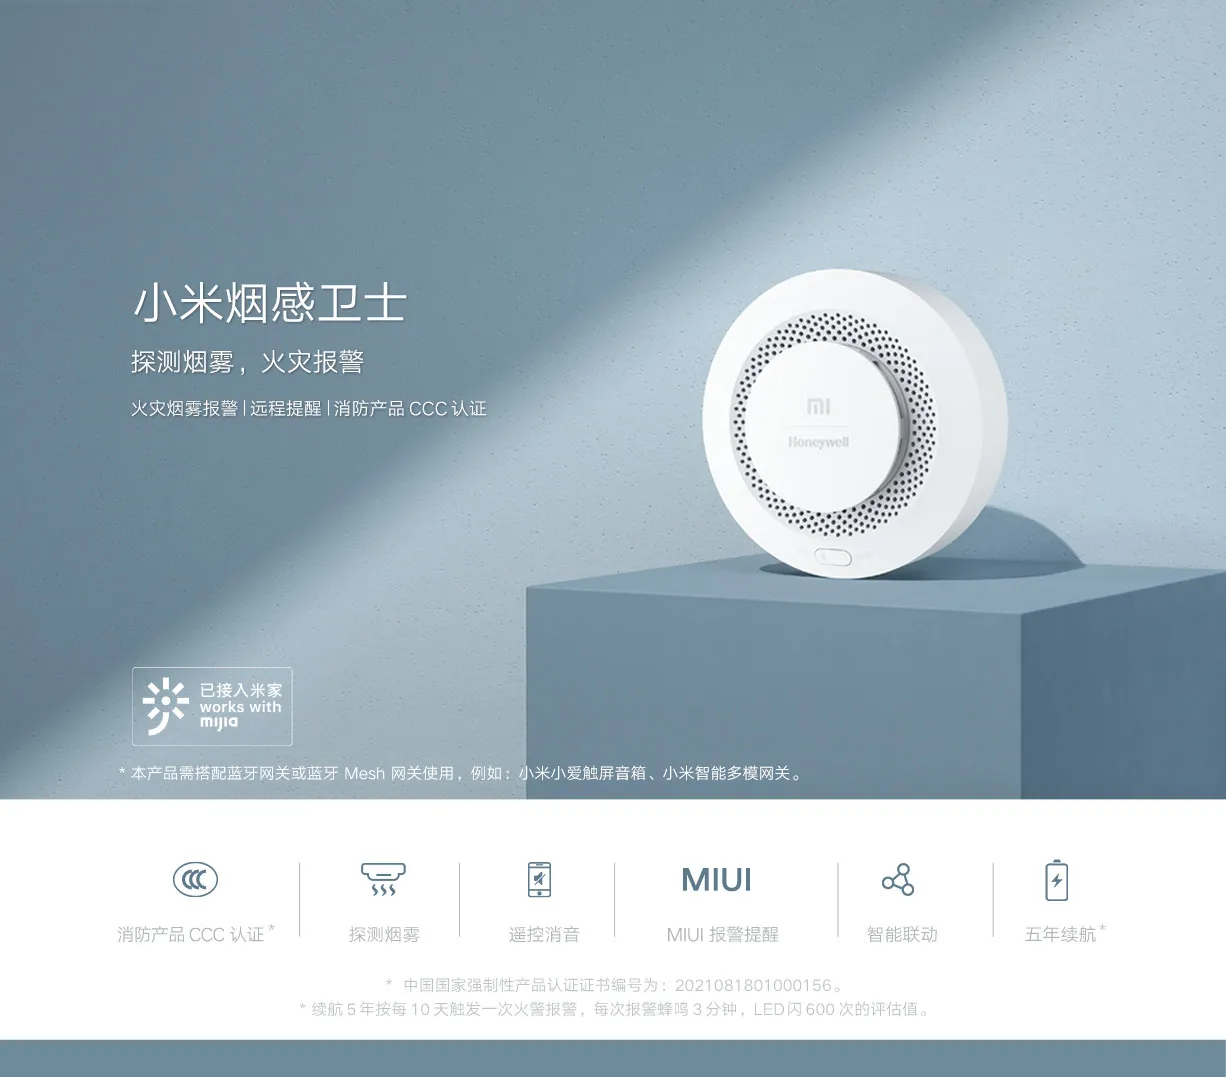 Xiaomi Mijia Smoke Detector